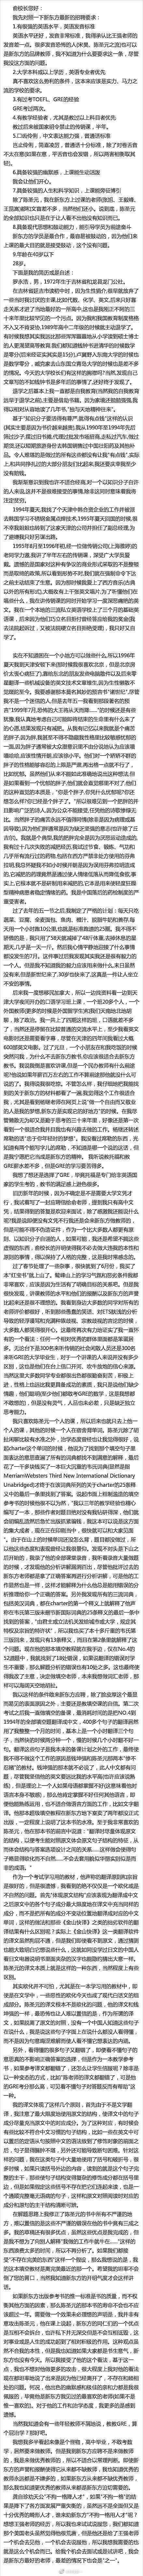 罗永浩写给俞敏洪的新东方万字求职信曝光 - 2